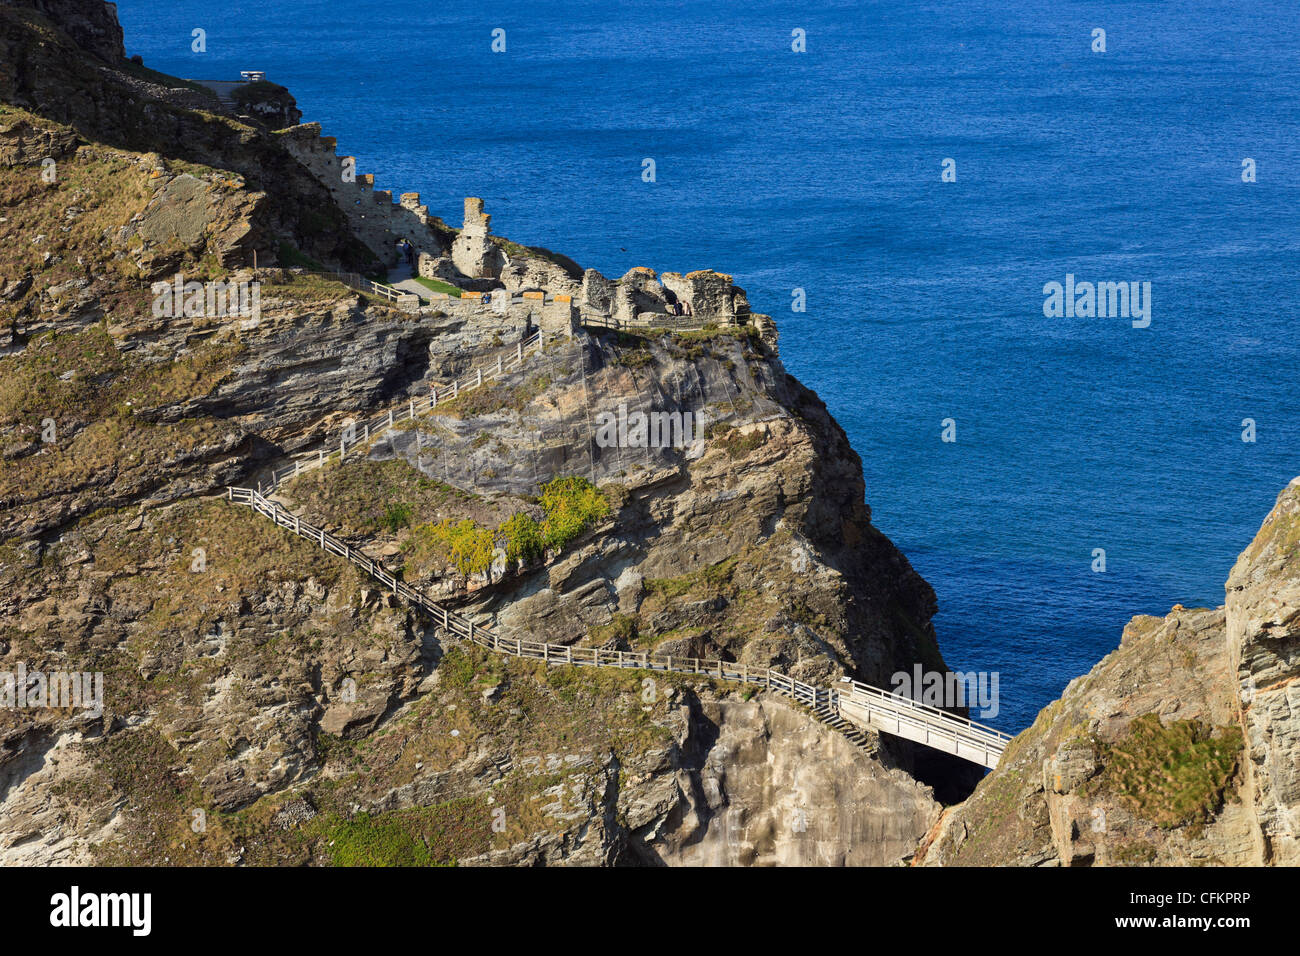 Brücke und Schritte für die Ruinen der legendären Camelot Schloss von König Arthur, der an der felsigen Küste von Cornwall. Tintagel Insel Cornwall England Großbritannien Großbritannien Stockfoto